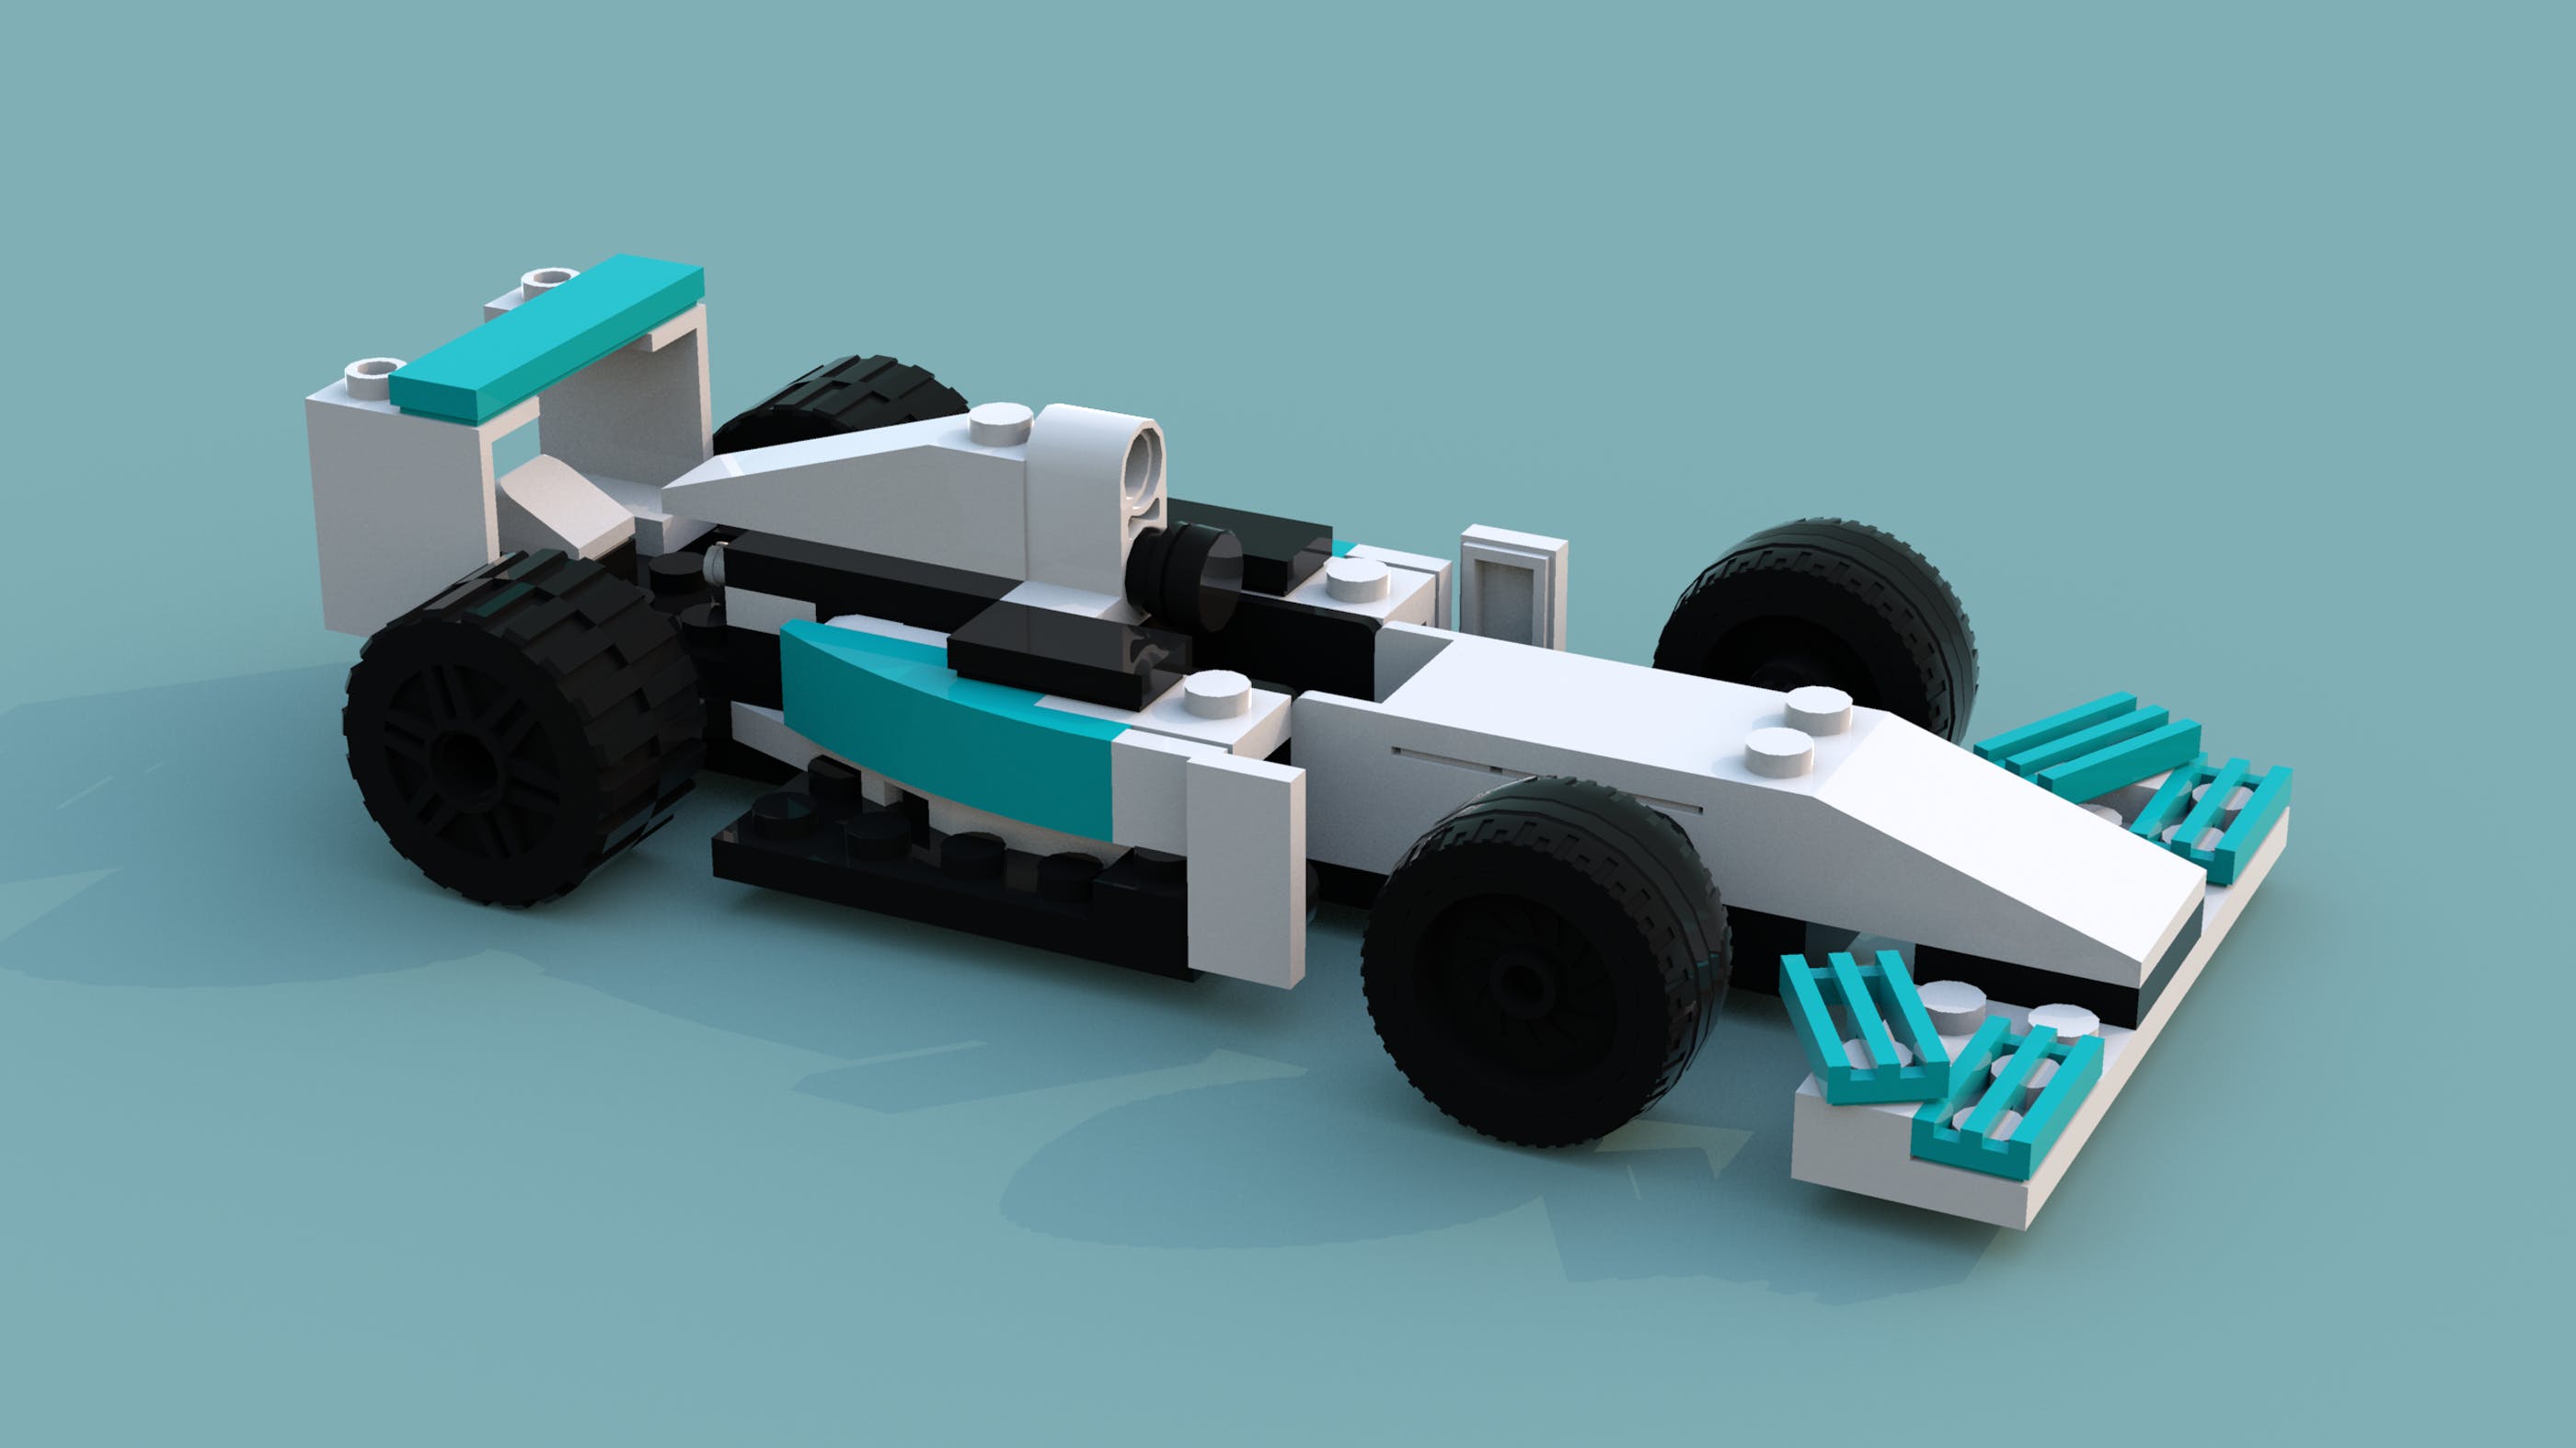 用乐高 lego 来回顾 f1 赛车发展简史